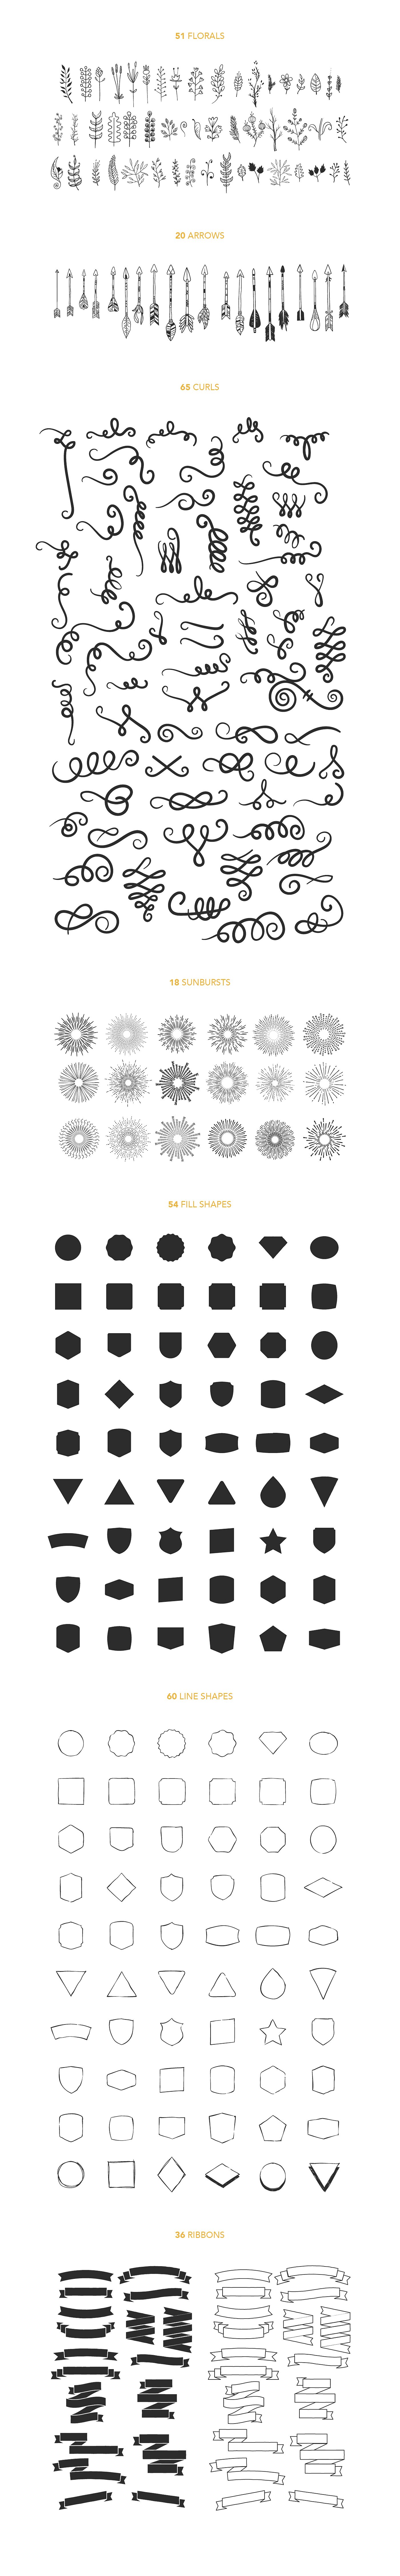 设计素材盛宴：98款字体+520个独立矢量图形+270款花卉元素 FontGrap – Font & Graphic Bundle插图4